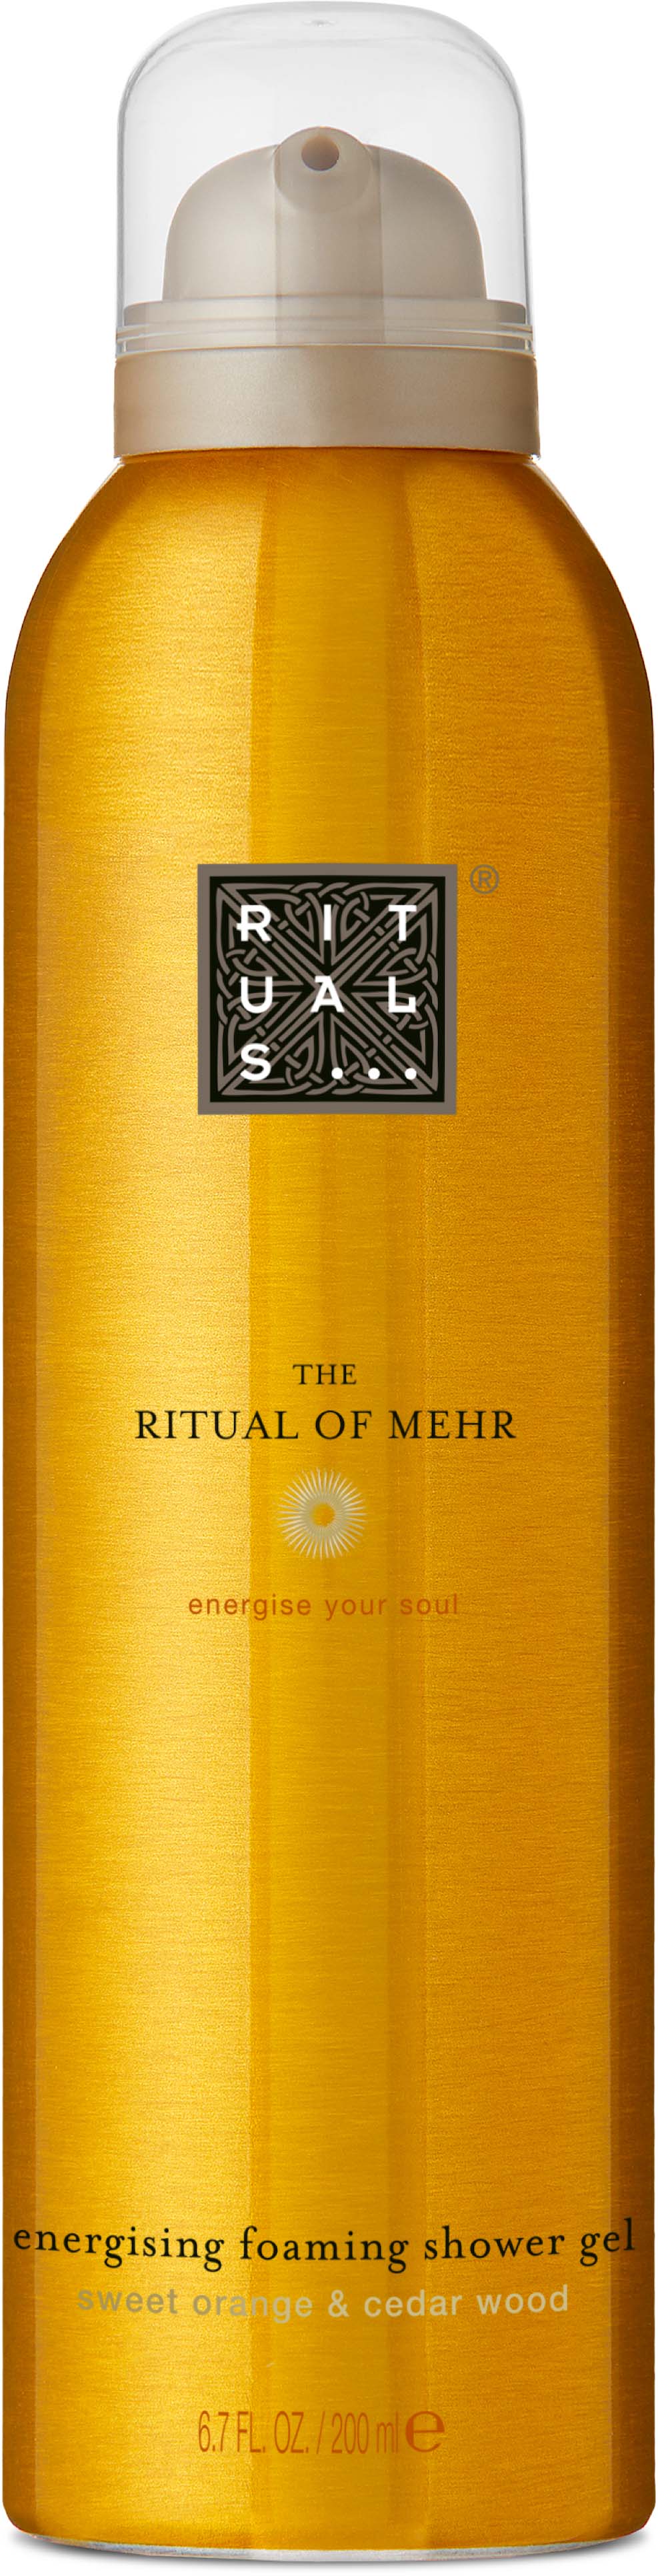 RITUALS The Ritual of Mehr Foaming Shower Gel 200 ml